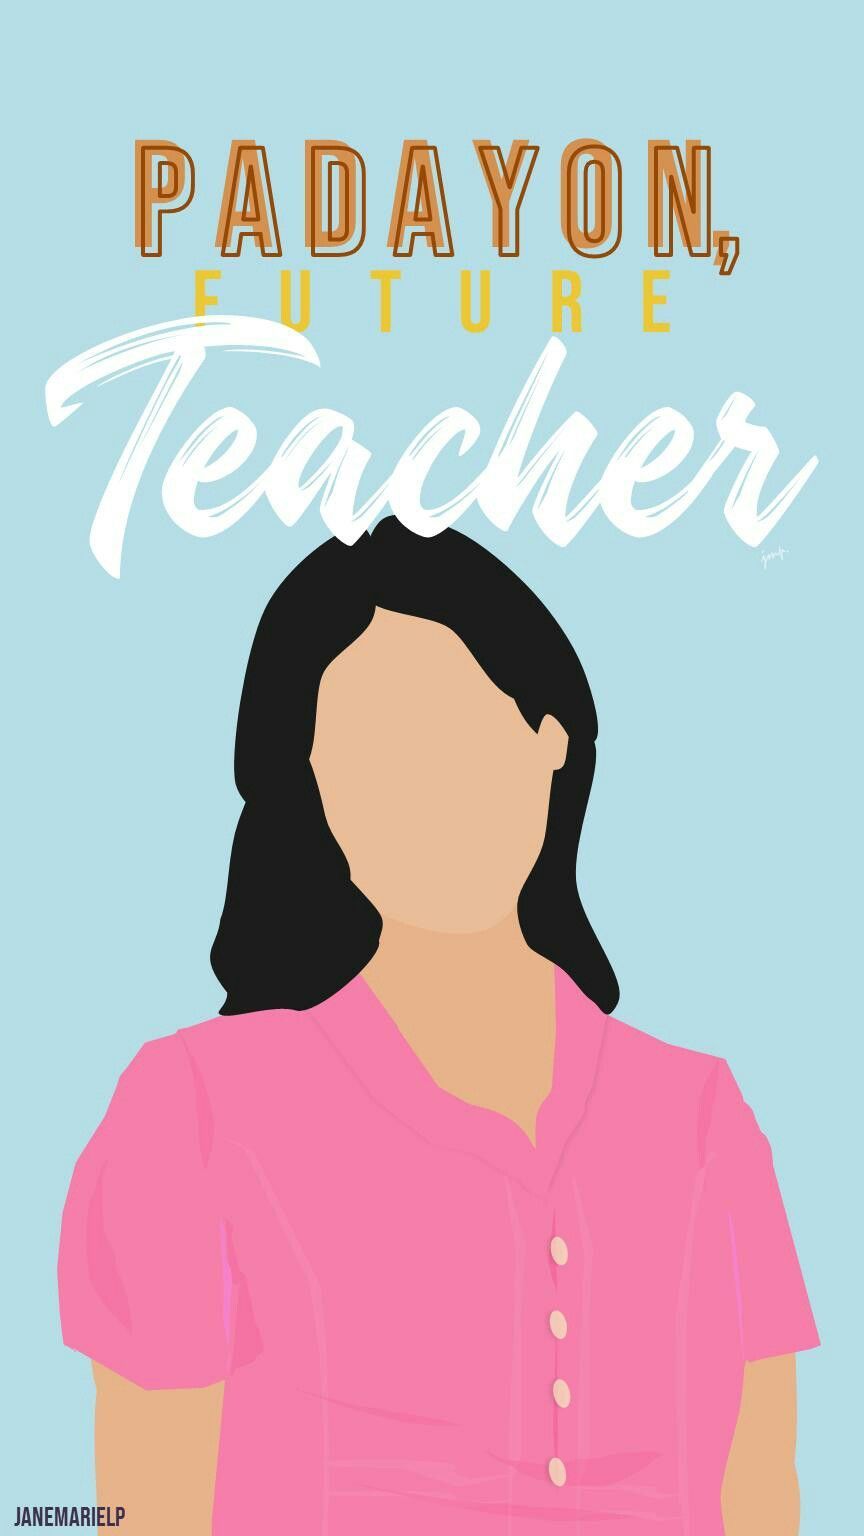 Padayon, Future Teacher (Girl). Future wallpaper, Teacher wallpaper, Kids background